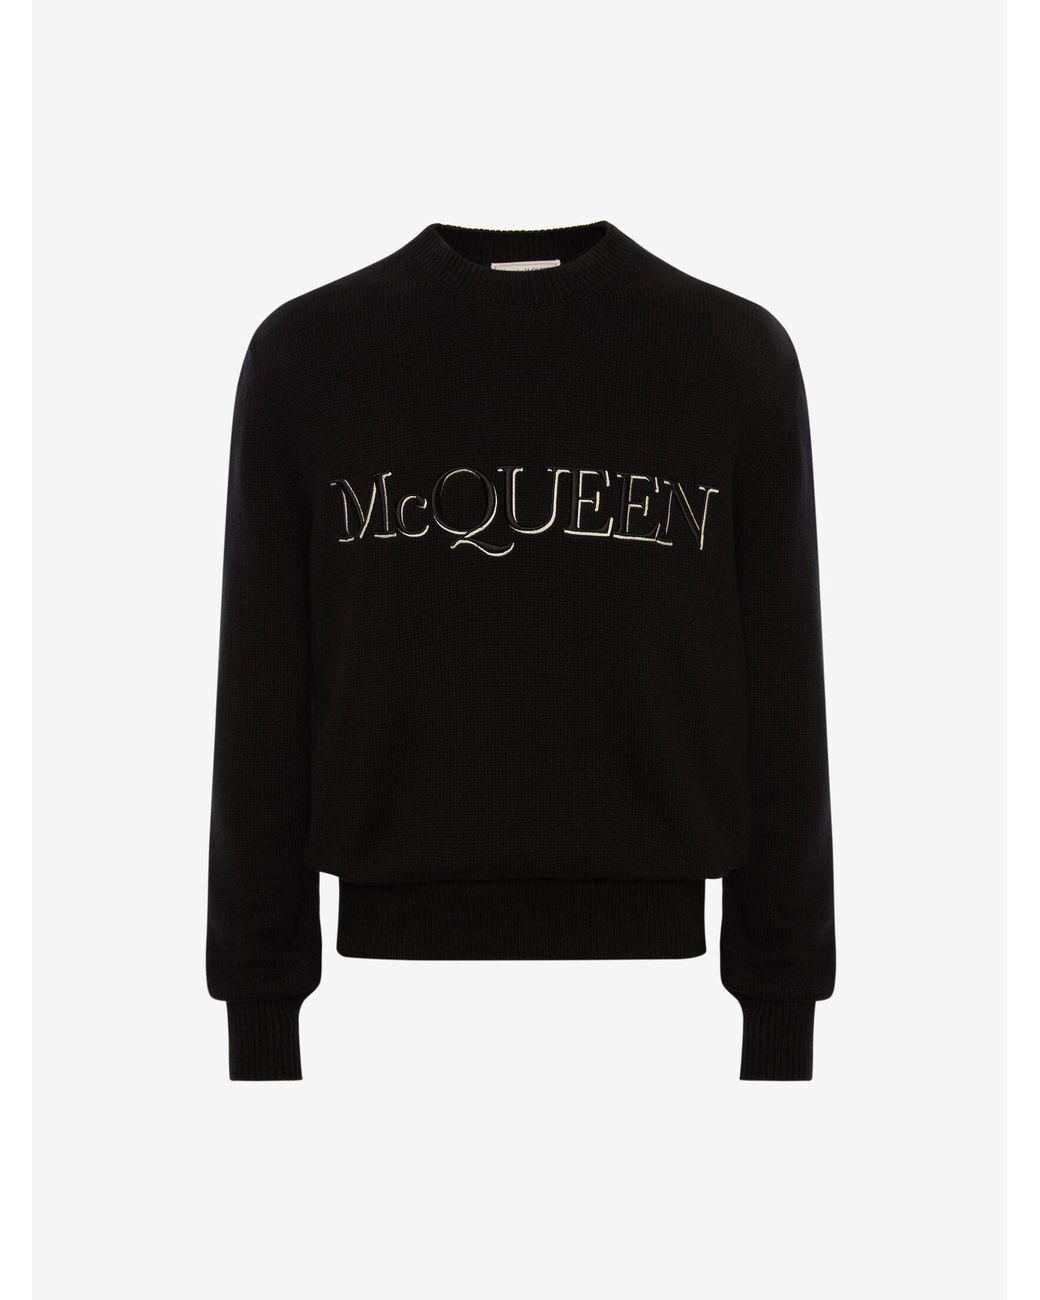 Alexander McQueen Black Mcqueen Embroidered Crew Neck Sweater for Men ...